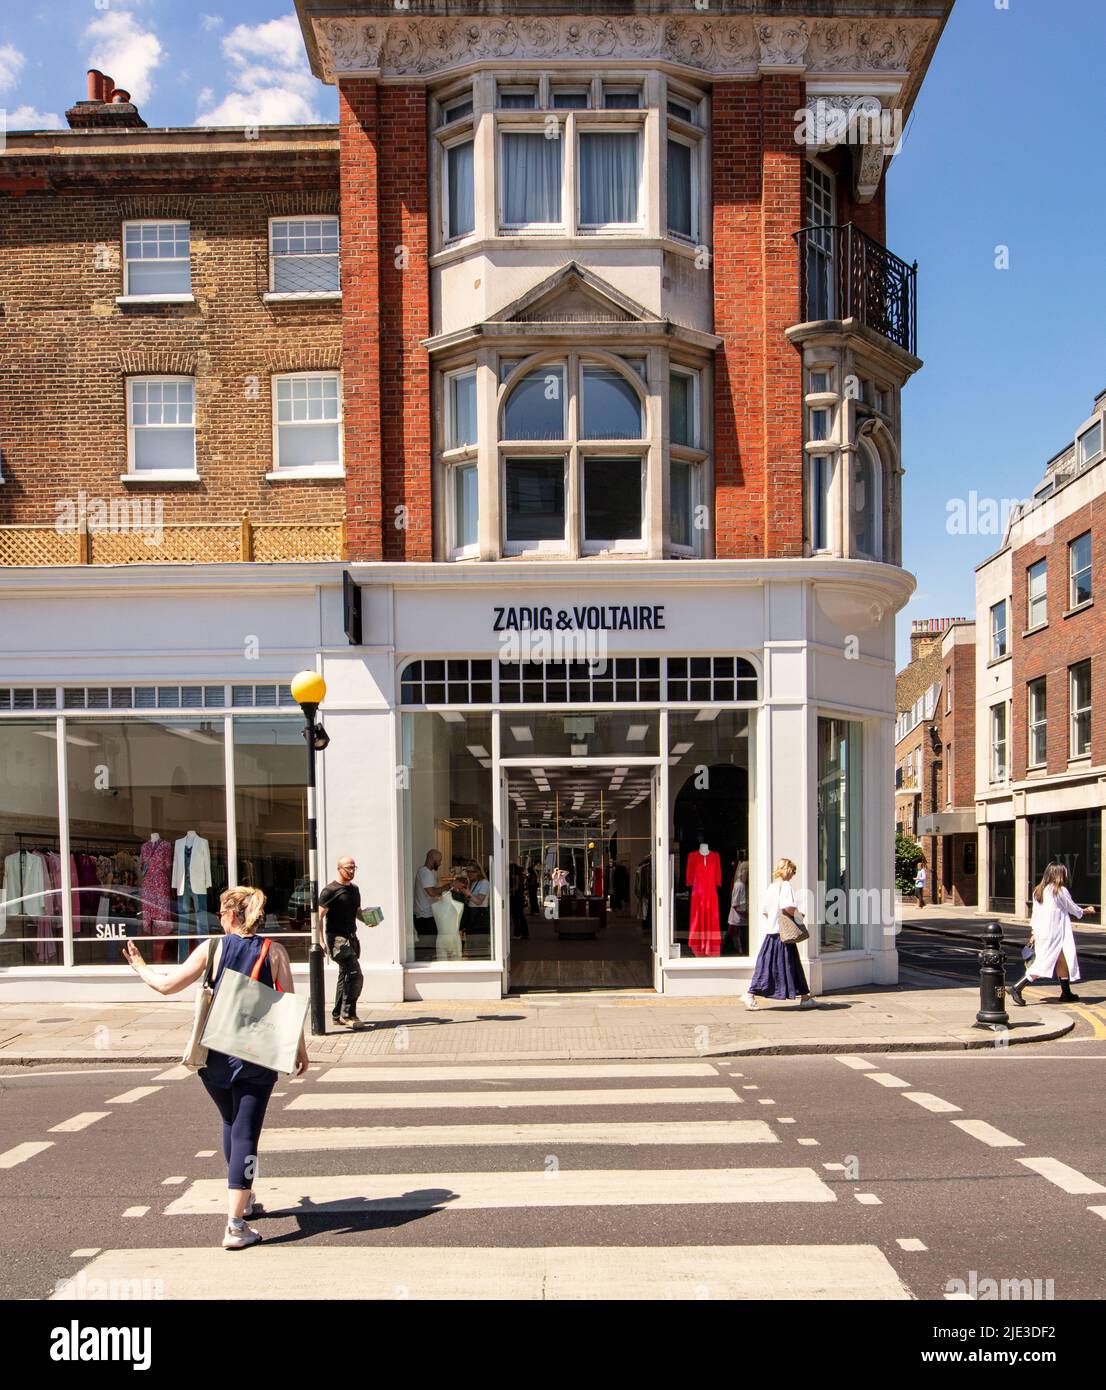 The King's Road, Londres, Reino Unido; una calle comercial de moda asociada con 1960s Swinging London; mostrando la tienda Zadig y Voltaire Foto de stock